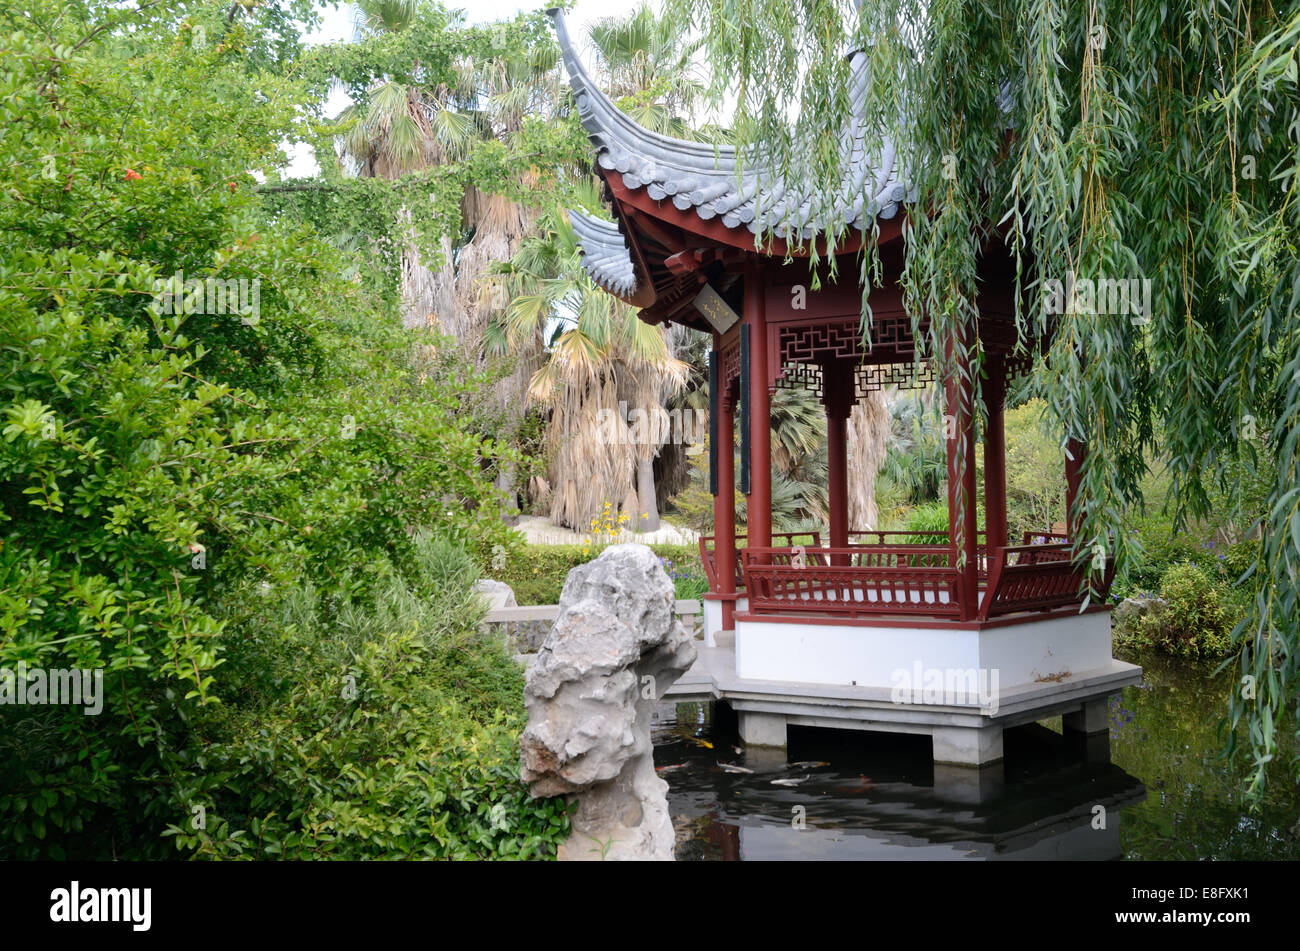 Kiosque ou pavillon chinois & saule pleureur sur le lac dans le jardin chinois du Parc Borely Marseille Provence France Banque D'Images